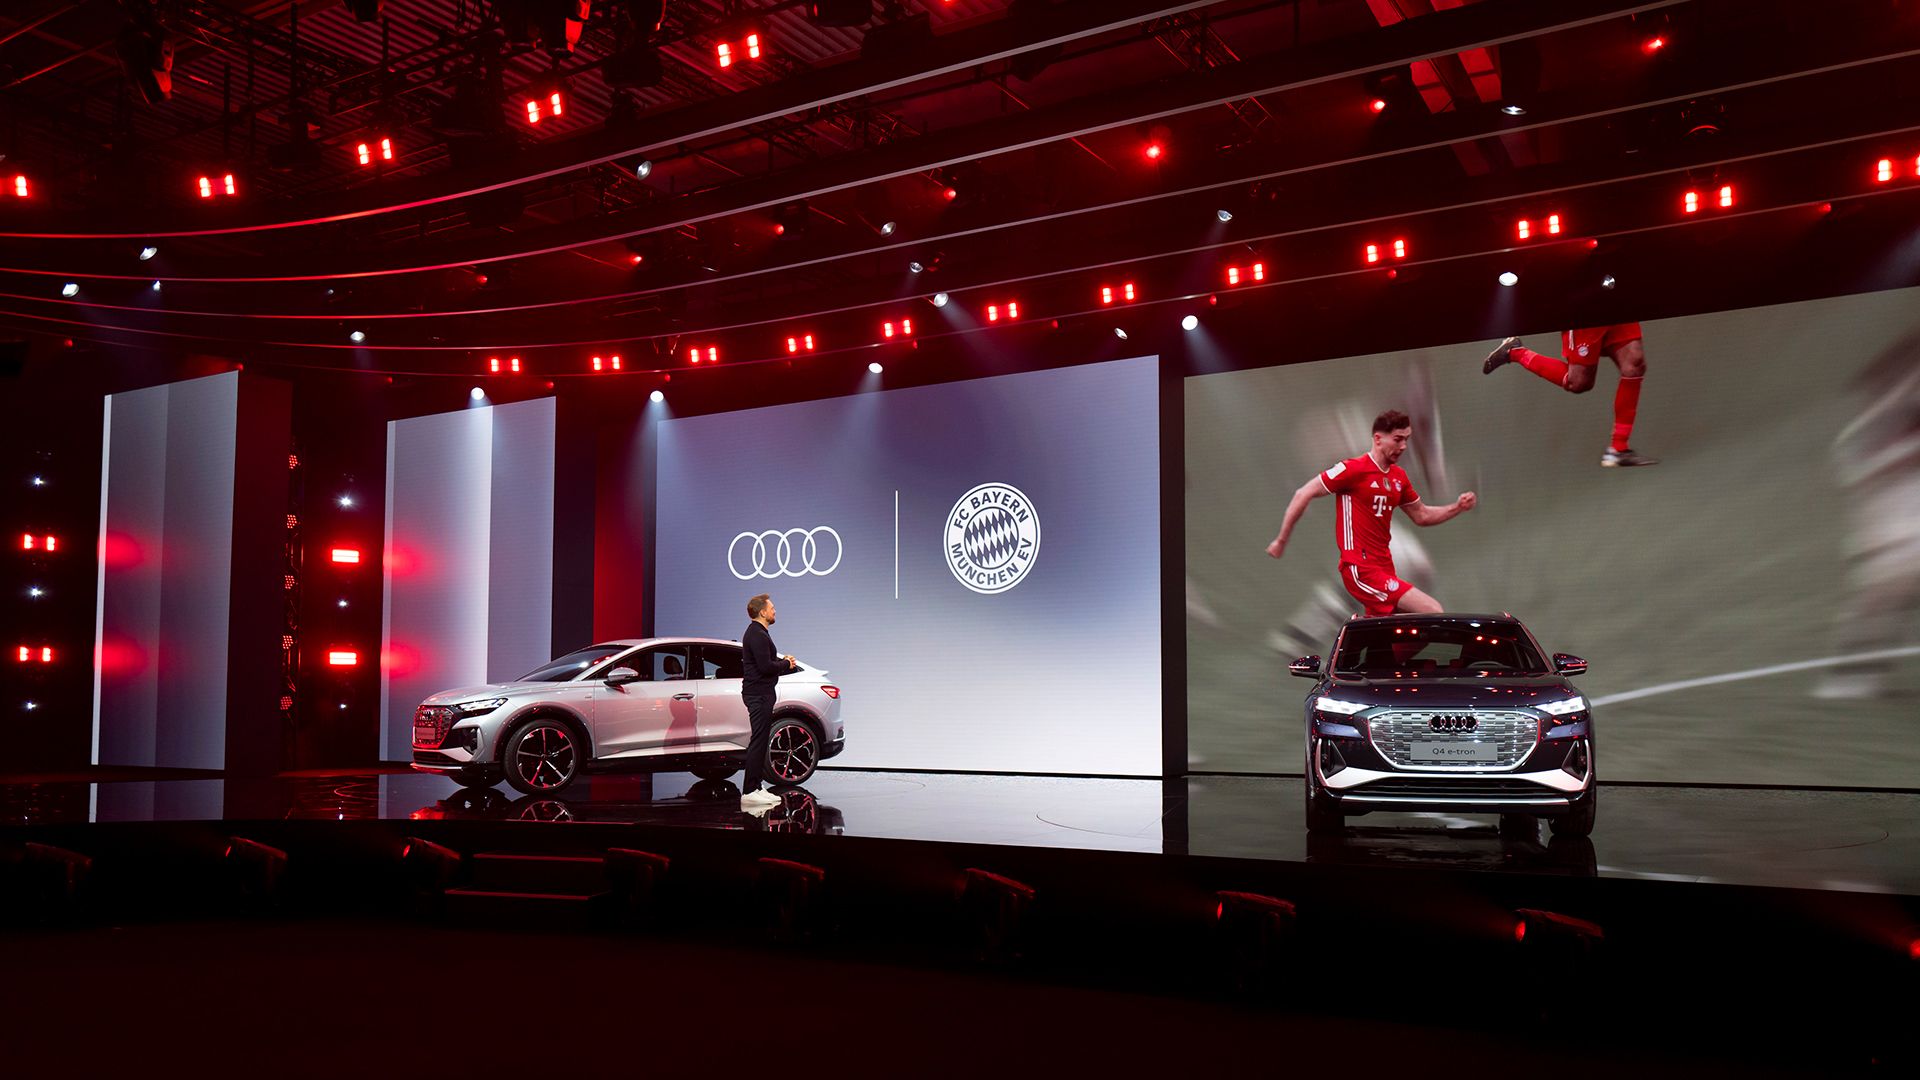 Zwei Audi Modelle stehen auf der Bühne. Die Leinwand zeigt Fußballspieler.